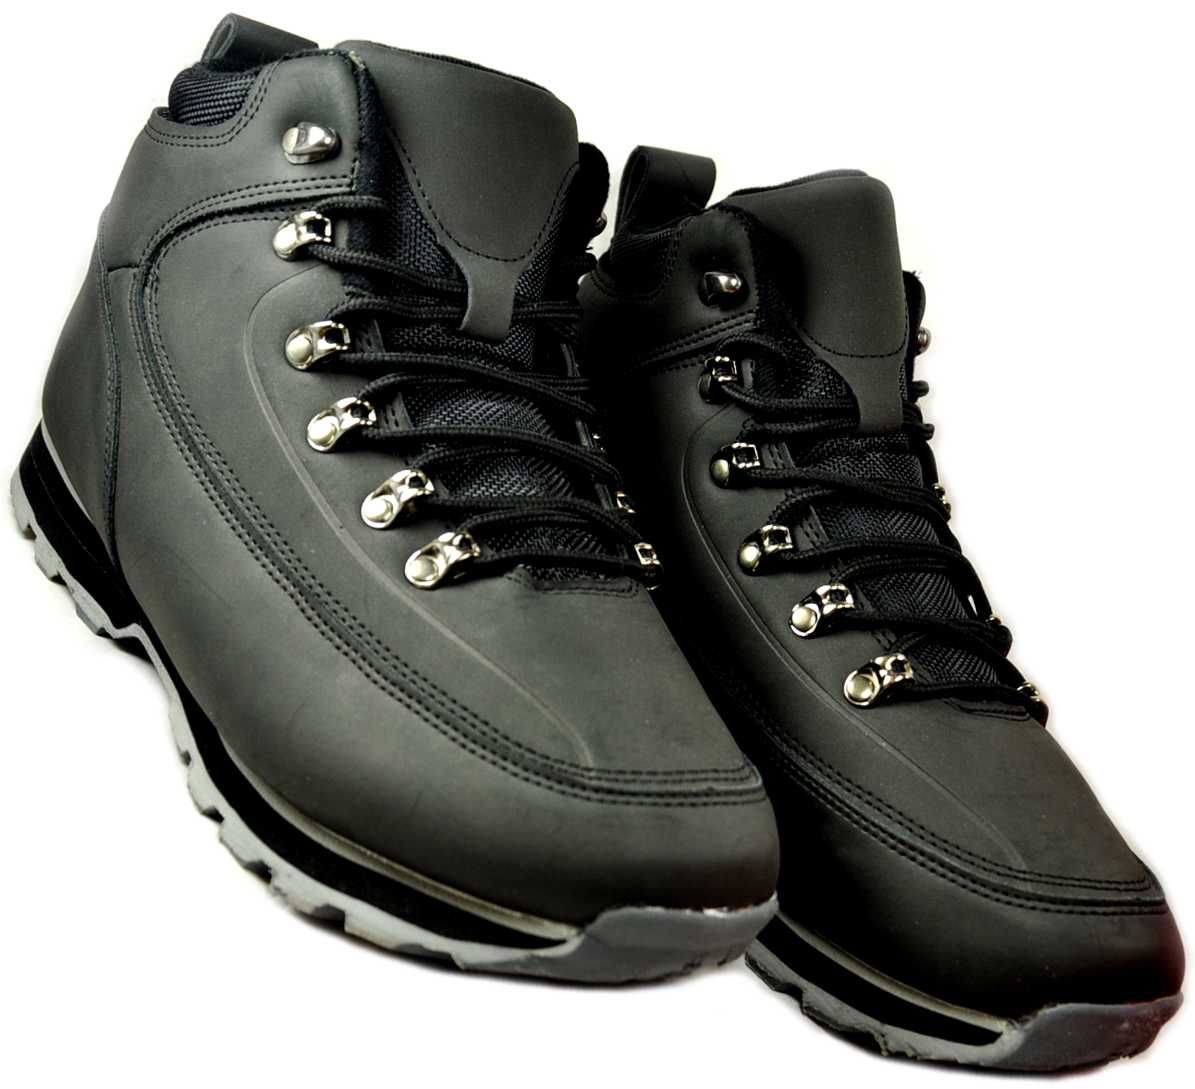 M1340 Zimowe męskie buty ŚNIEGOWCE TREKKINGOWE czarne